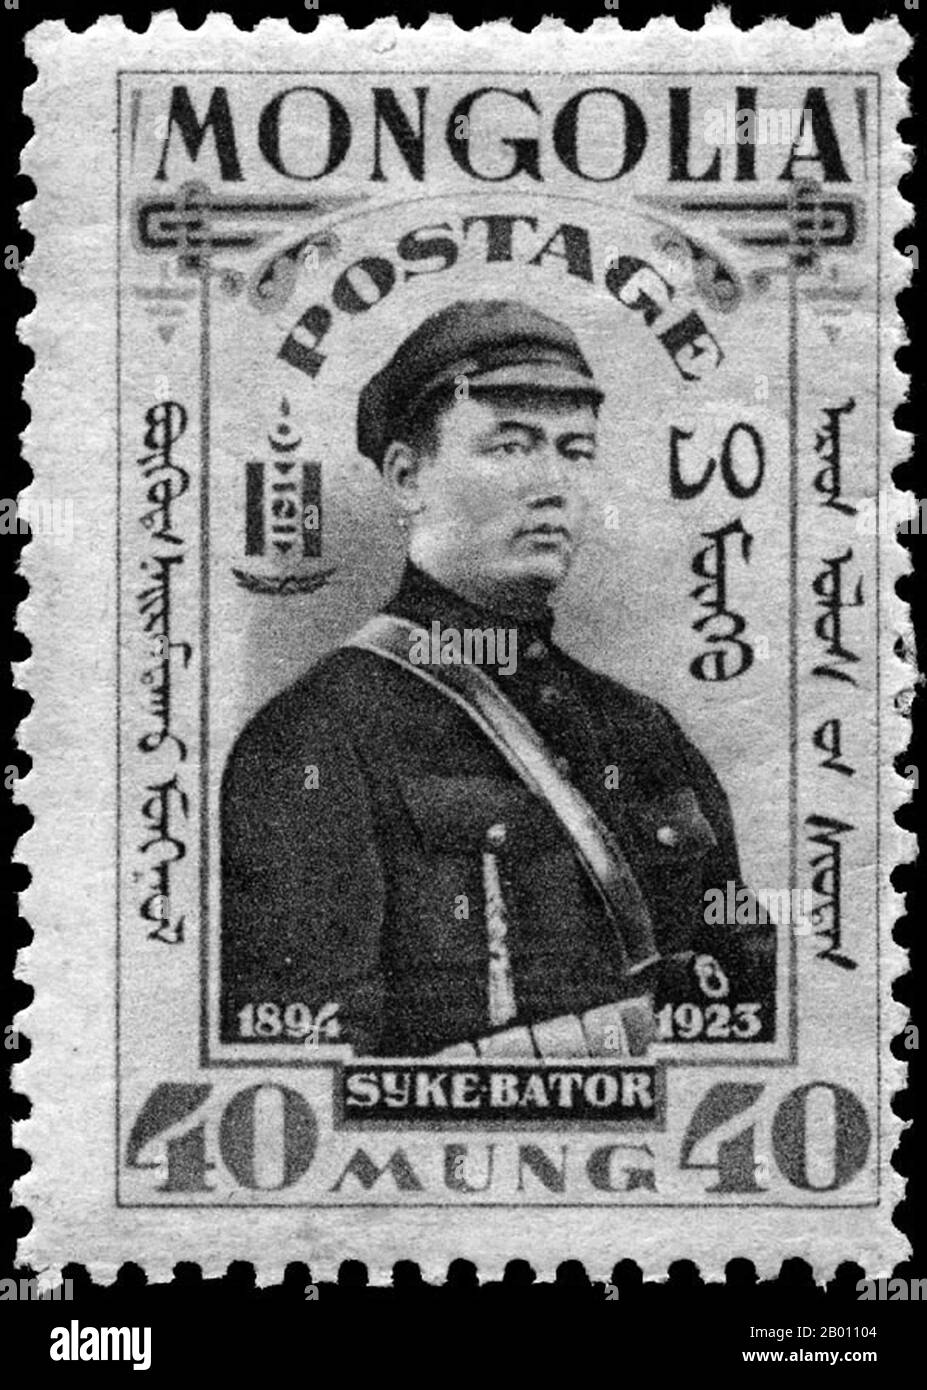 Mongolia: Dammin Sukhbaatar (1893-1923) leader militare, nazionalista e rivoluzionario, su un francobollo mongolo, 1932. Damdin Sukhbaatar (Mongolia, 2 febbraio 1893 – Mongolia, 20 febbraio 1923) è stato un . 1921 È ricordato come una delle figure più importanti nella lotta per l'indipendenza della Mongolia. Foto Stock